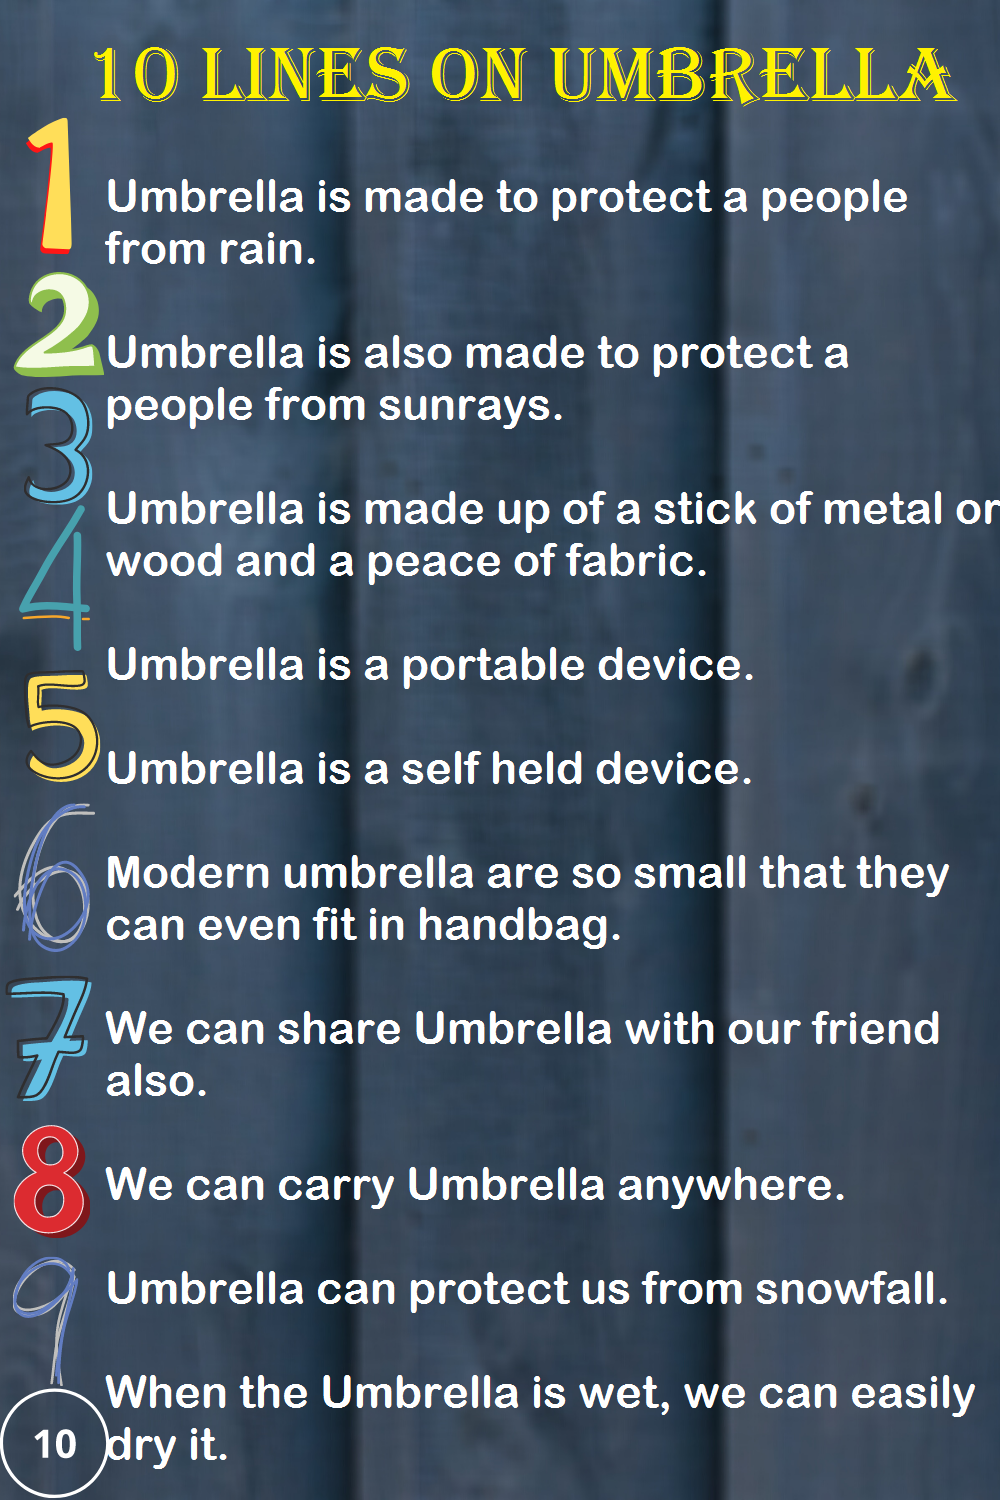 umbrella sentence essay